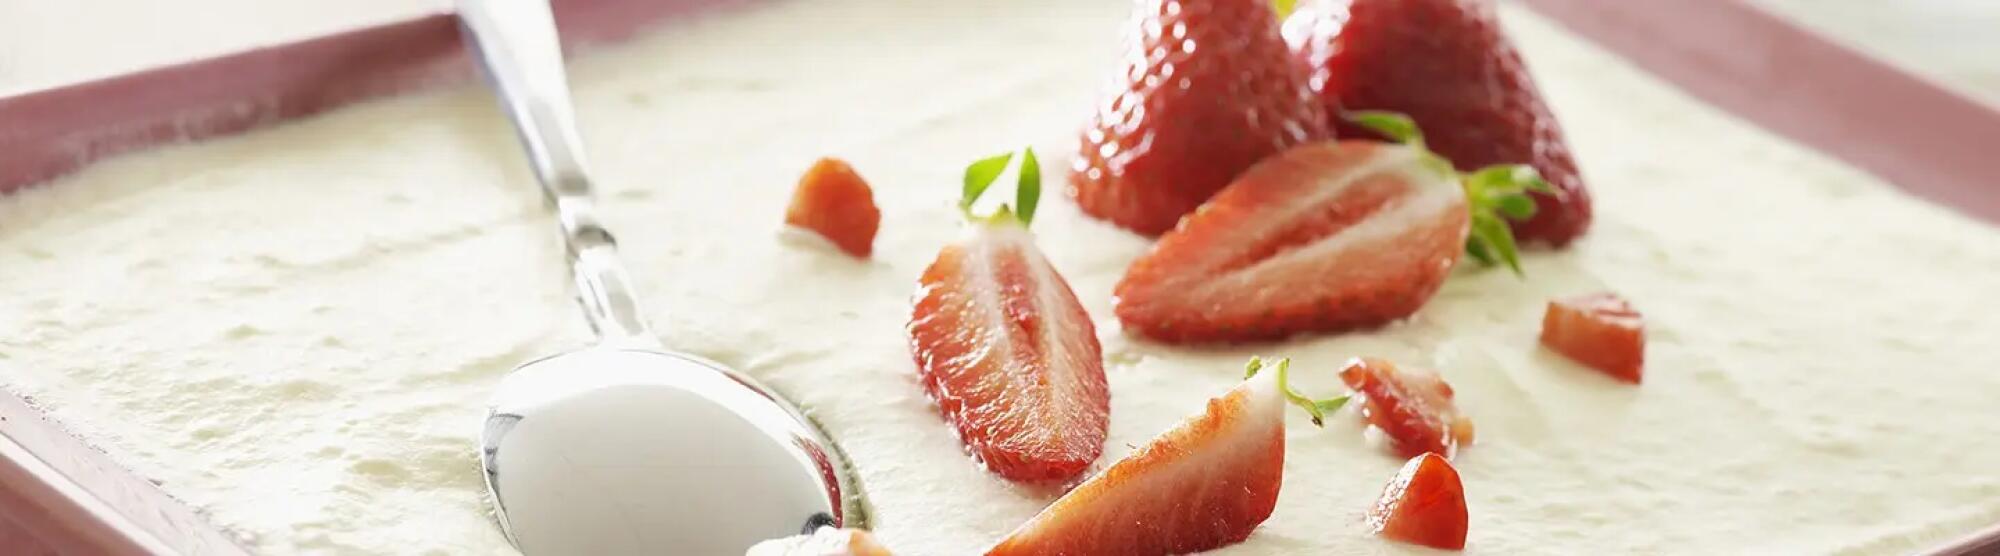 Recette : Tiramisu aux fraises allégé